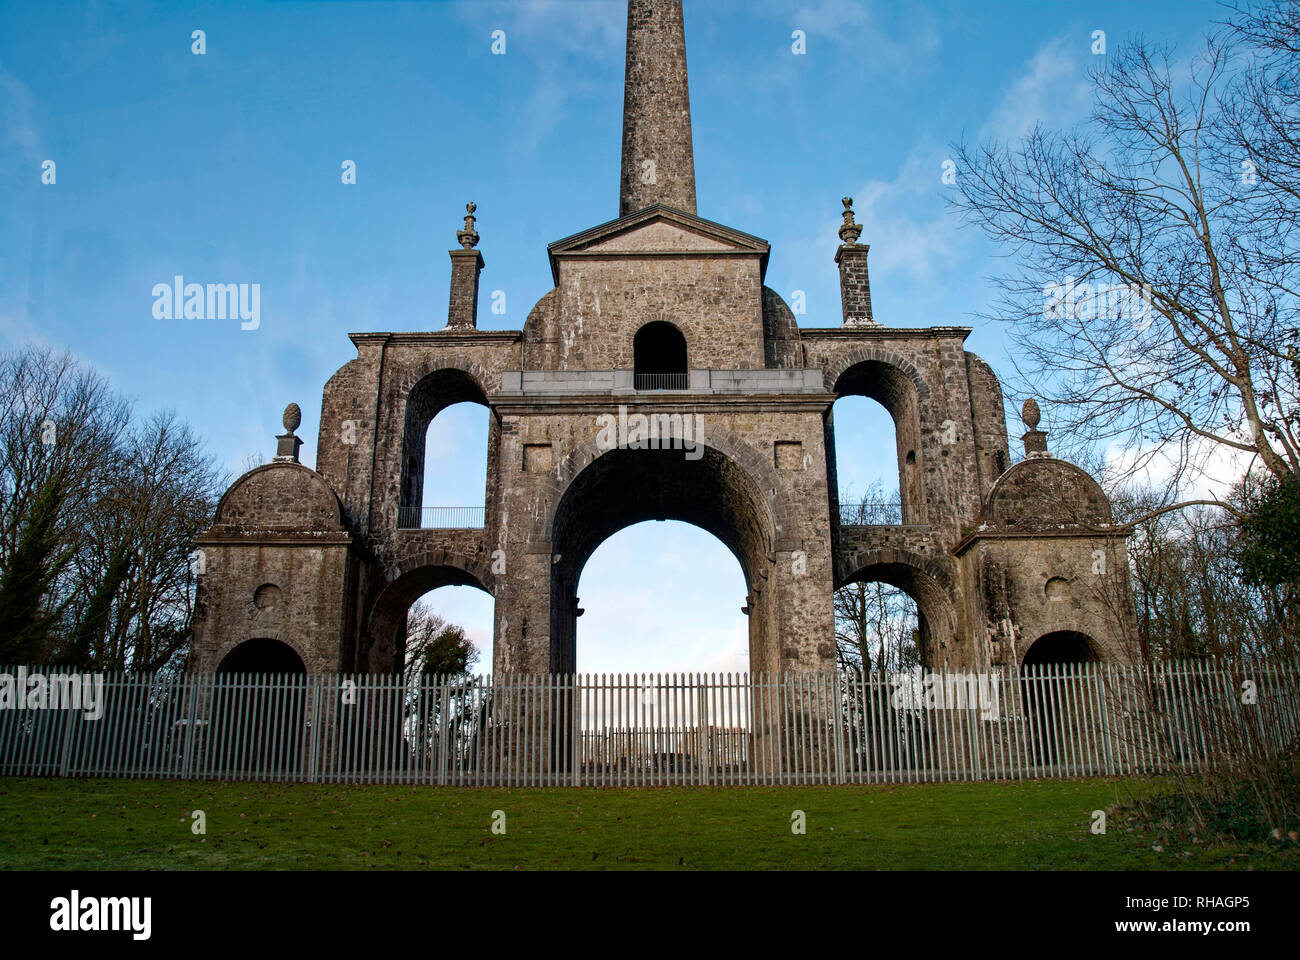 Die conolly Narrheit, der Obelisk, ursprünglich der Conolly Narrheit, ist ein Obelisk Struktur und National Monument in der Nähe von Maynooth, County Kildare, Irland. Stockfoto